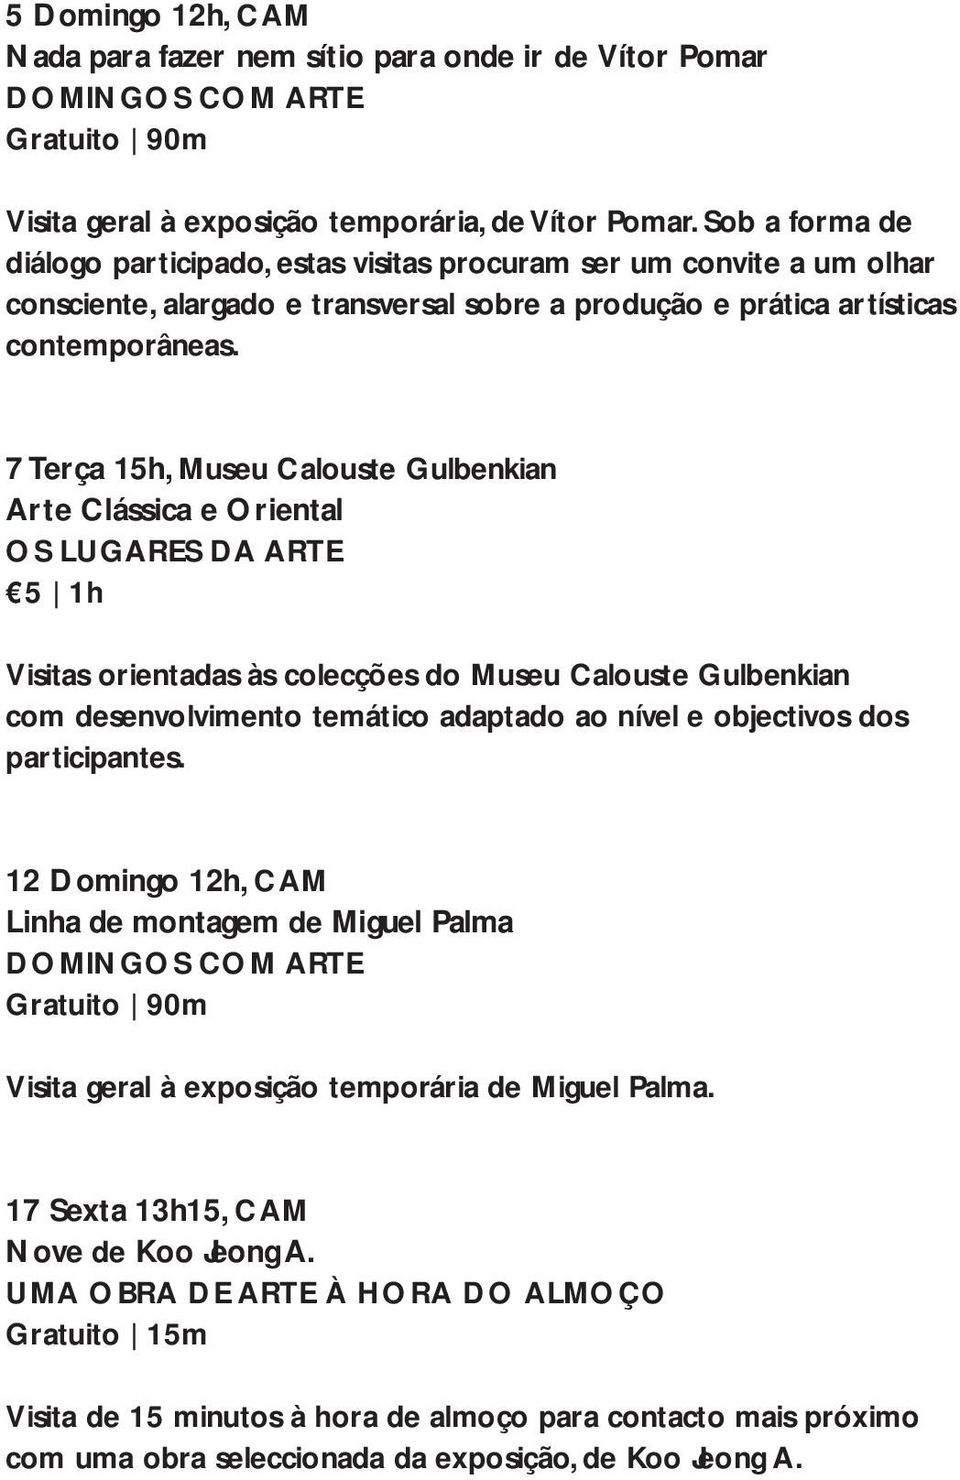 7 Terça 15h, Museu Calouste Gulbenkian Arte Clássica e Oriental OS LUGARES DA ARTE 5 1h Visitas orientadas às colecções do Museu Calouste Gulbenkian com desenvolvimento temático adaptado ao nível e